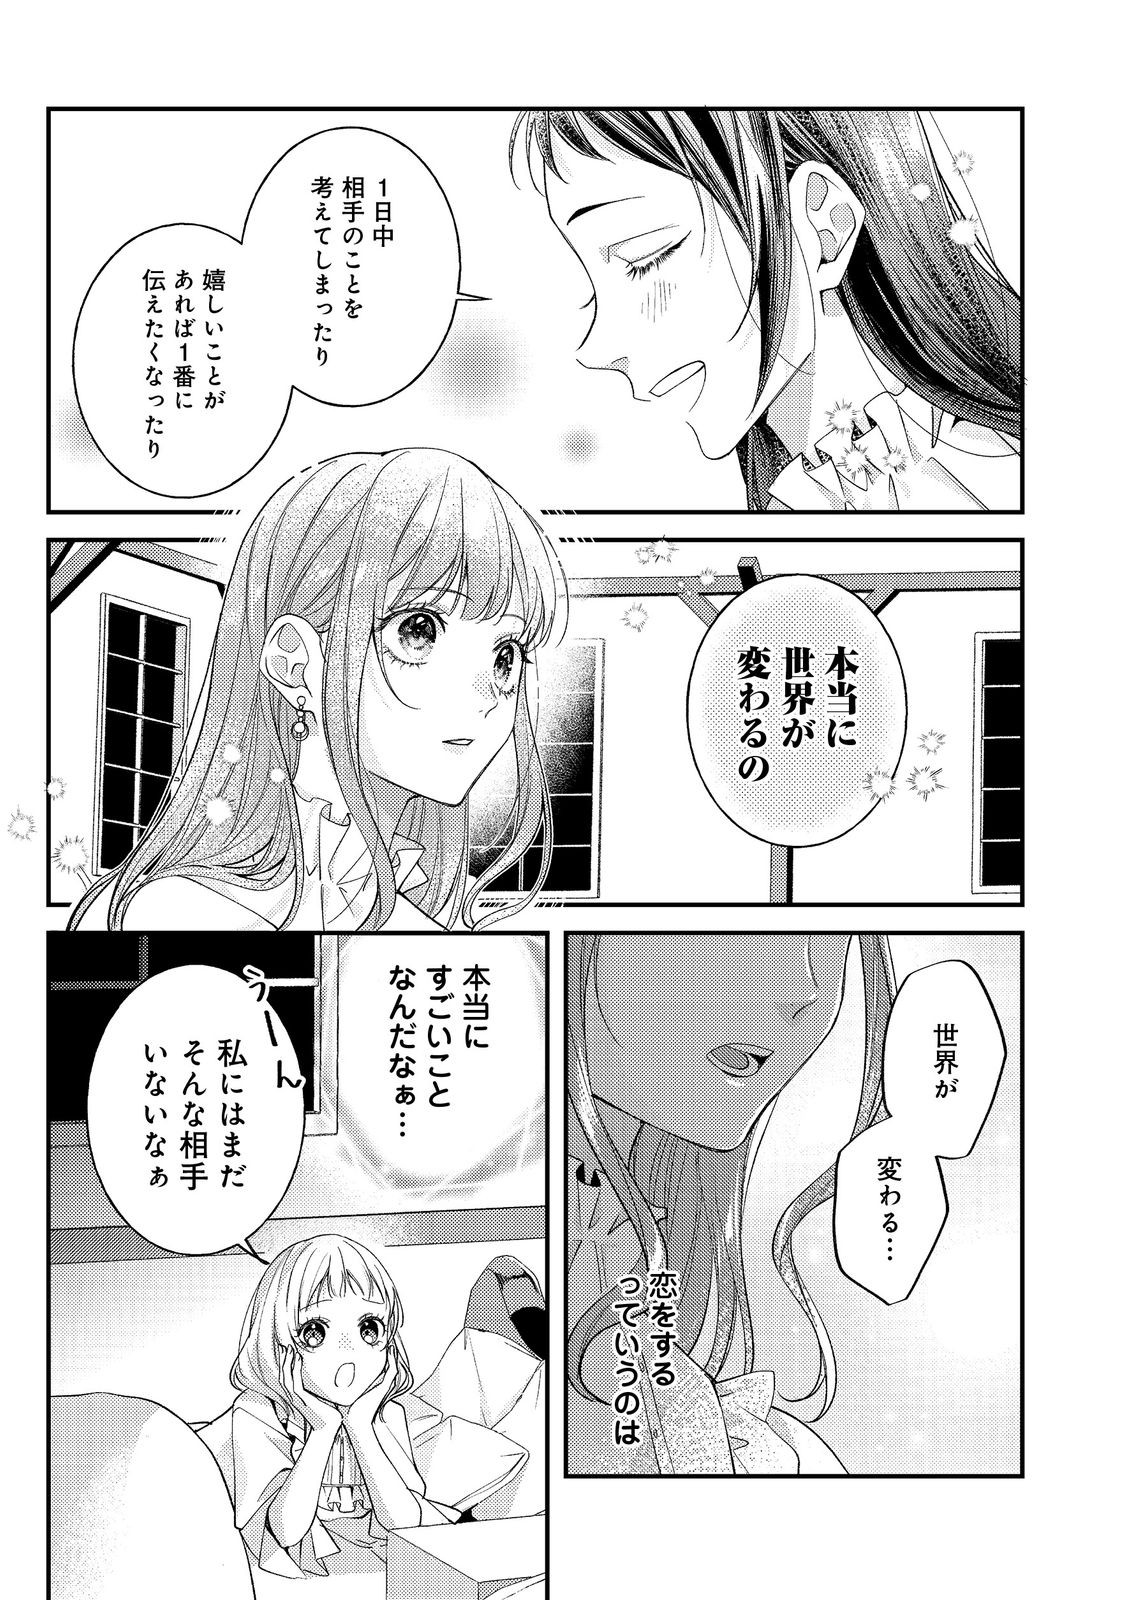 Bad End Mokuzen no Heroine ni Tensei shita Watashi, Konse de wa Renai suru Tsumori ga Cheat na Ani ga Hanashite kuremasen!? - Chapter 21 - Page 7